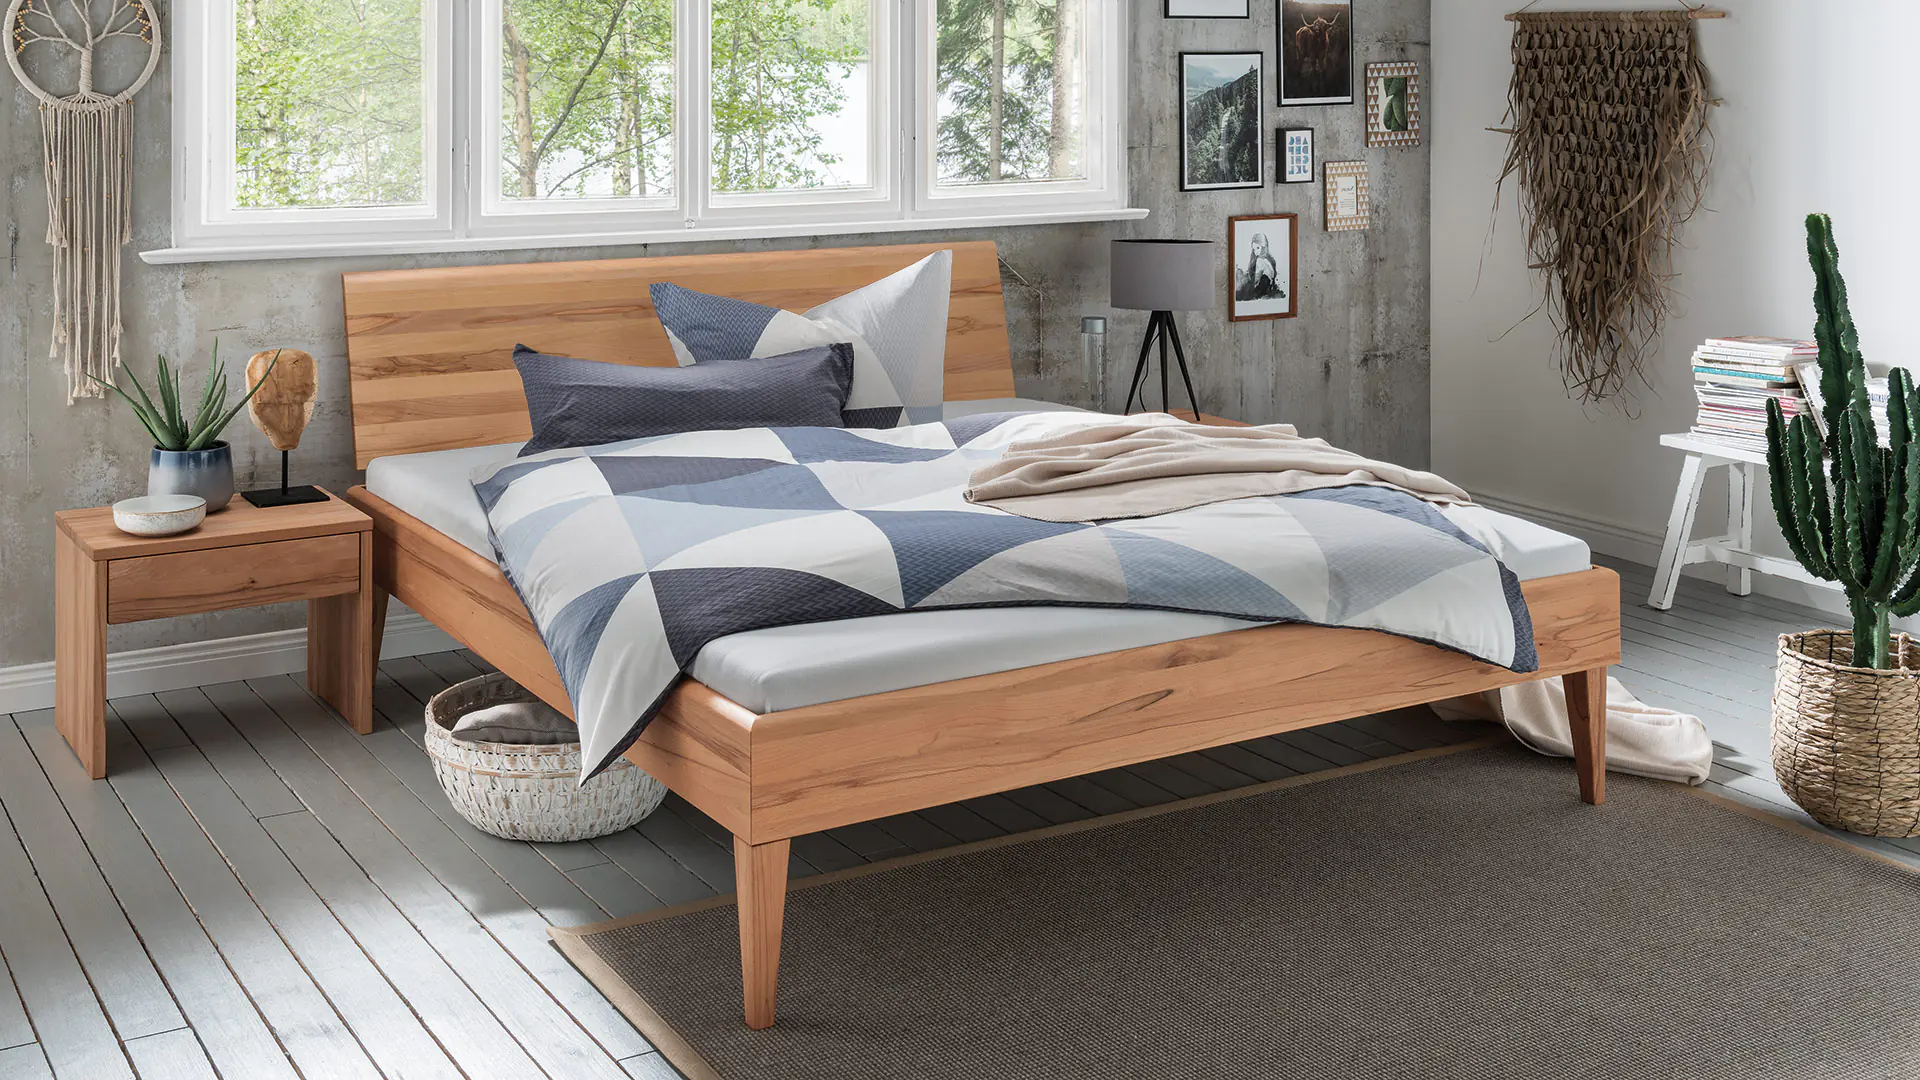 Alasco massief houten bed in beuken kernhout met doorlopend, verzacht hoofdbord